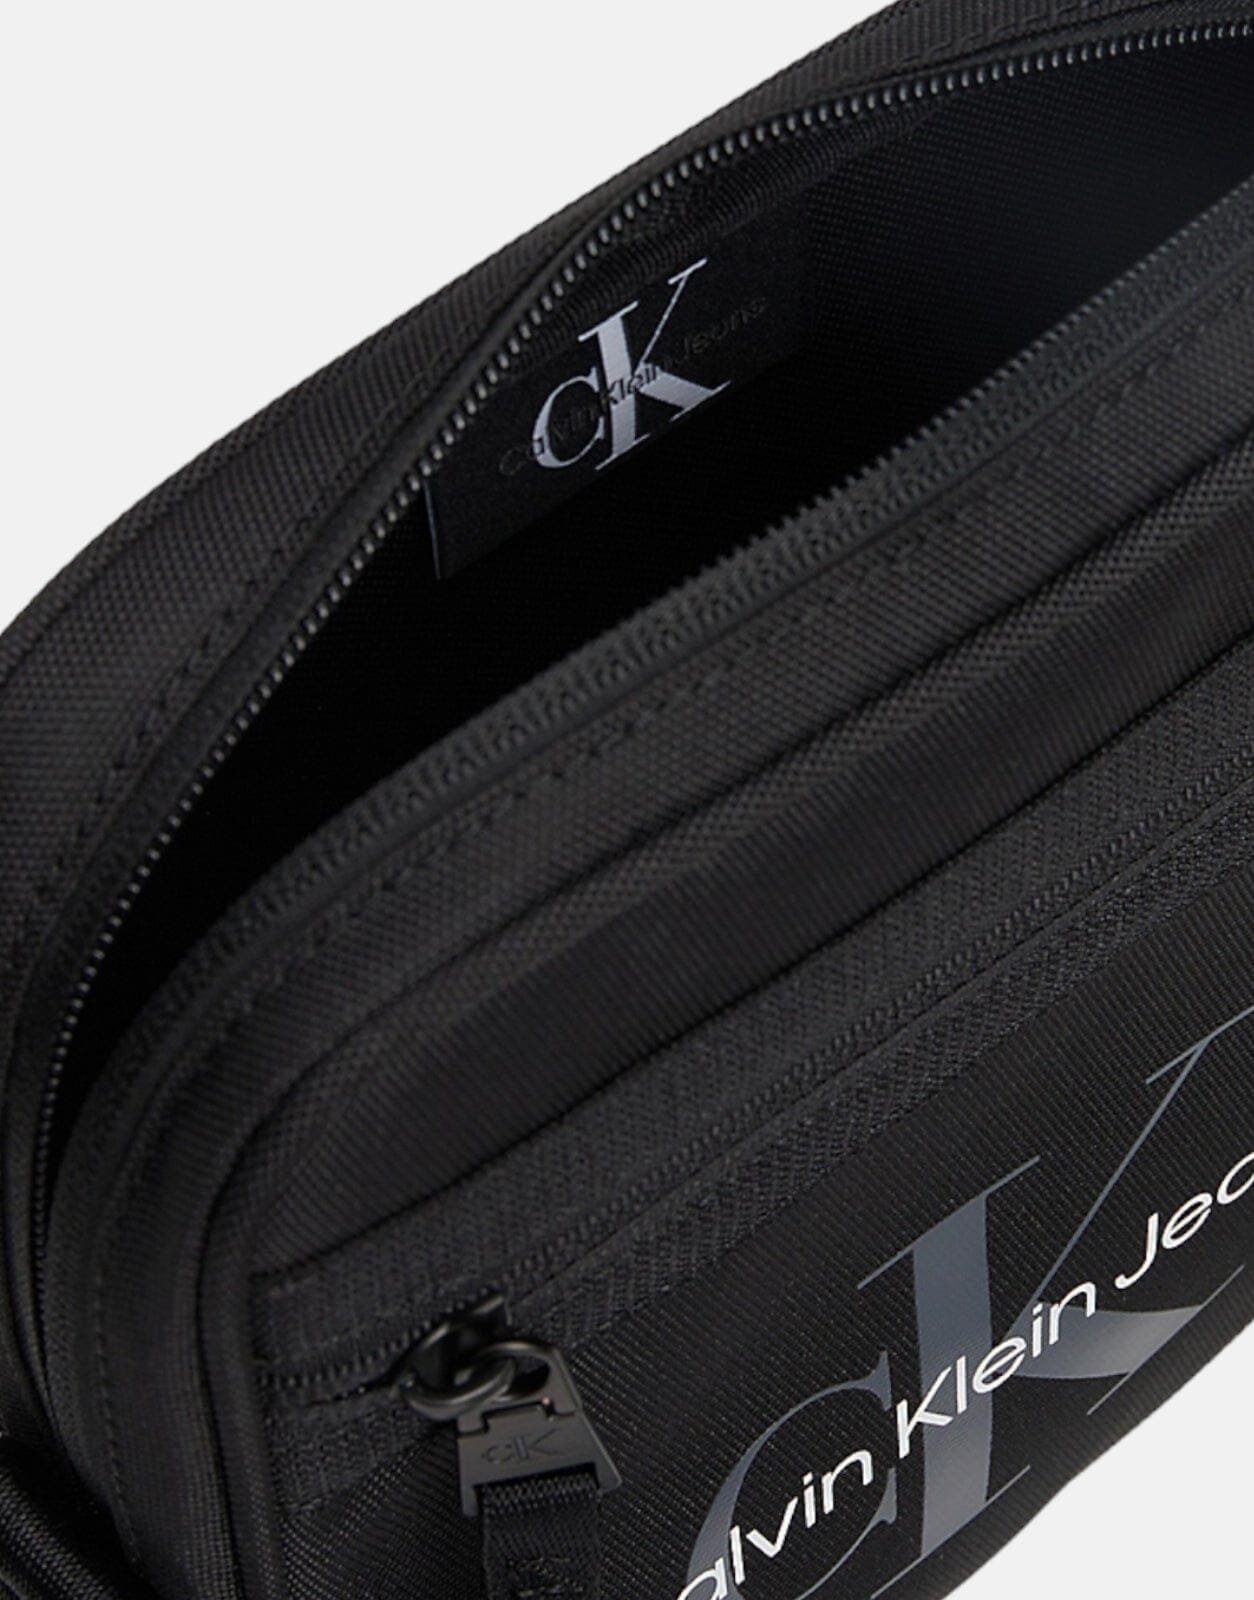 Calvin Klein Sport Essentials Reporter Bag - Subwear